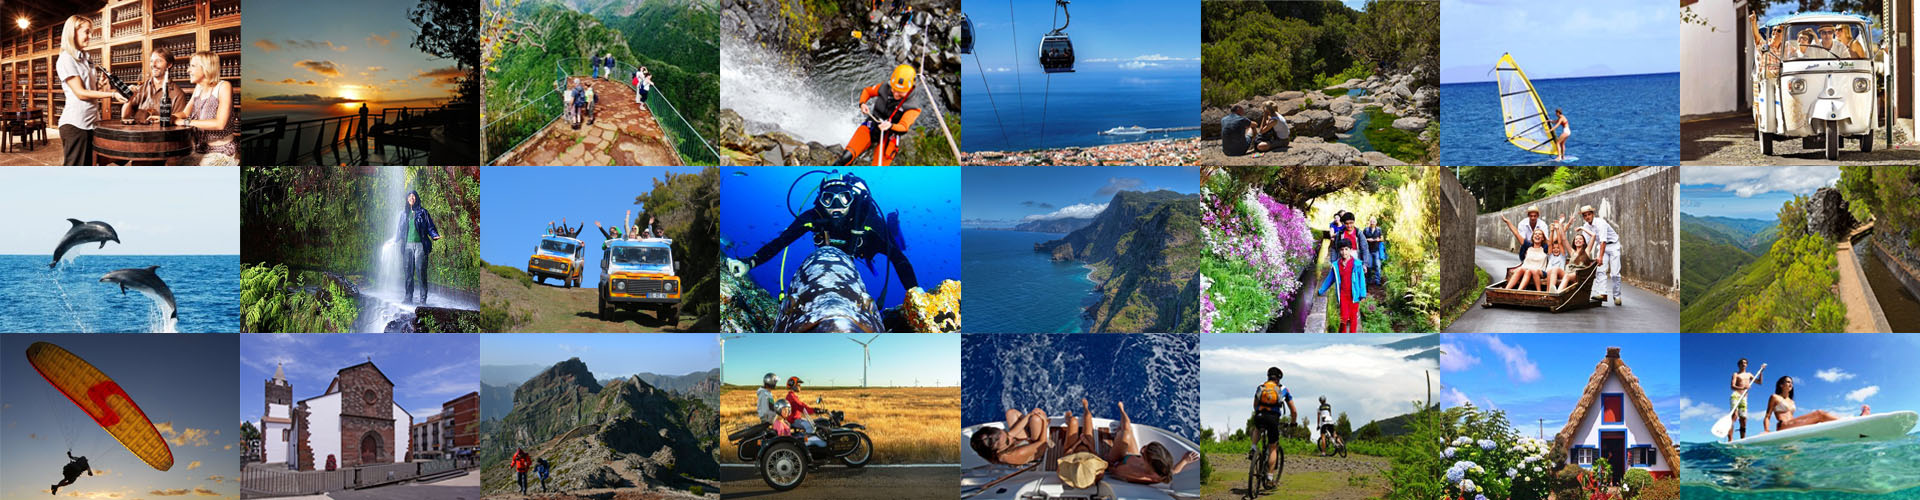 10 Razões para Visitar a Ilha da Madeira - Actividades ao Ar Livre